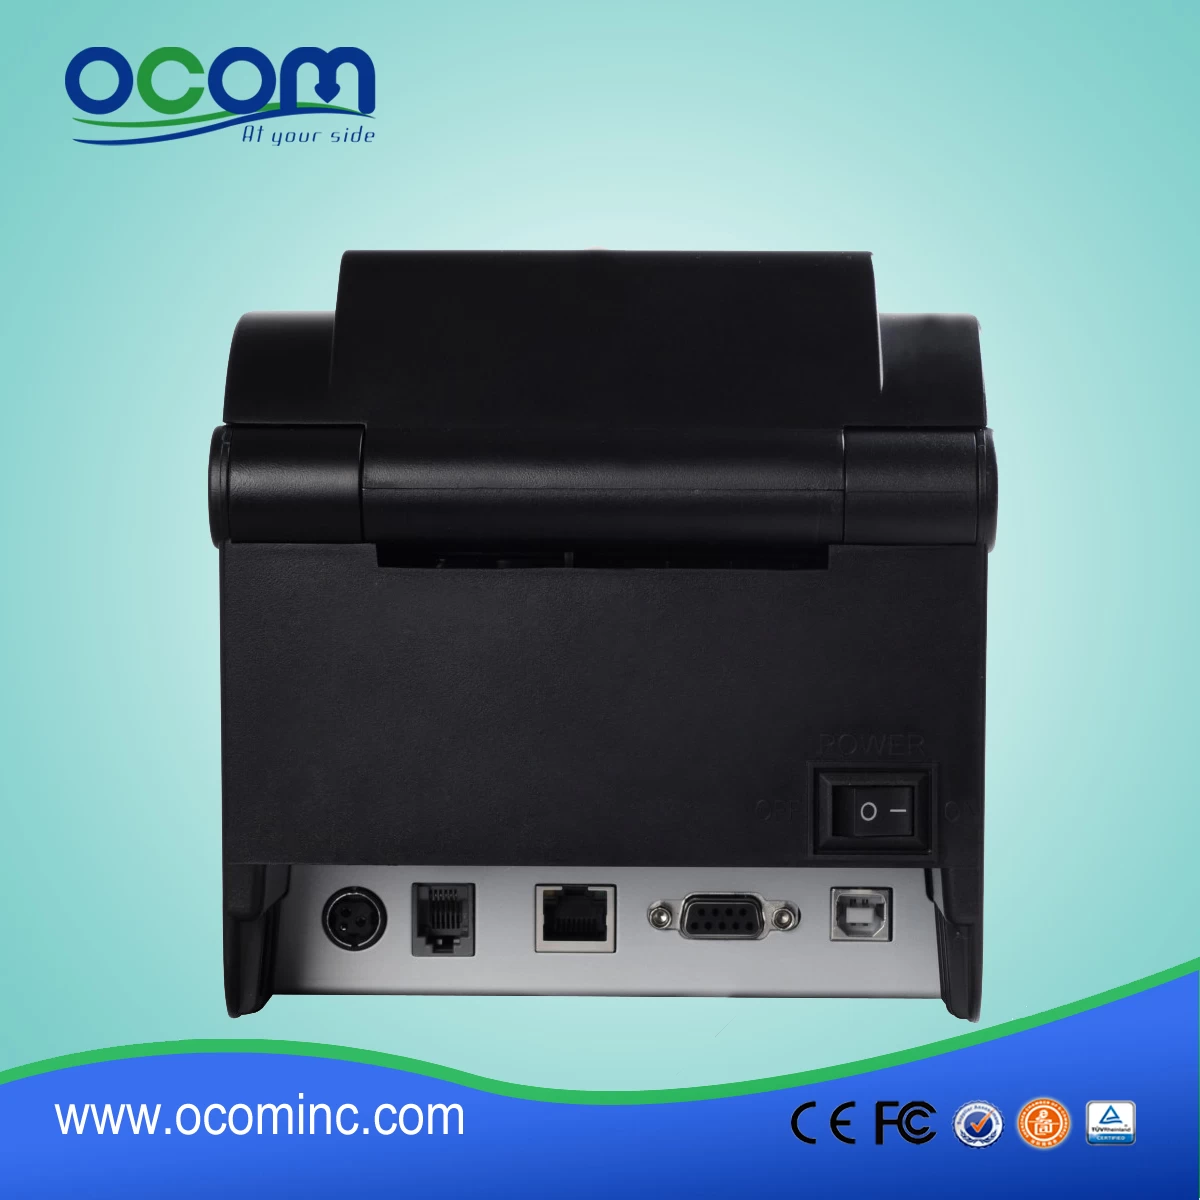 80mm Direct Thermal Barcode Label Printer, printed label (OCBP-005)